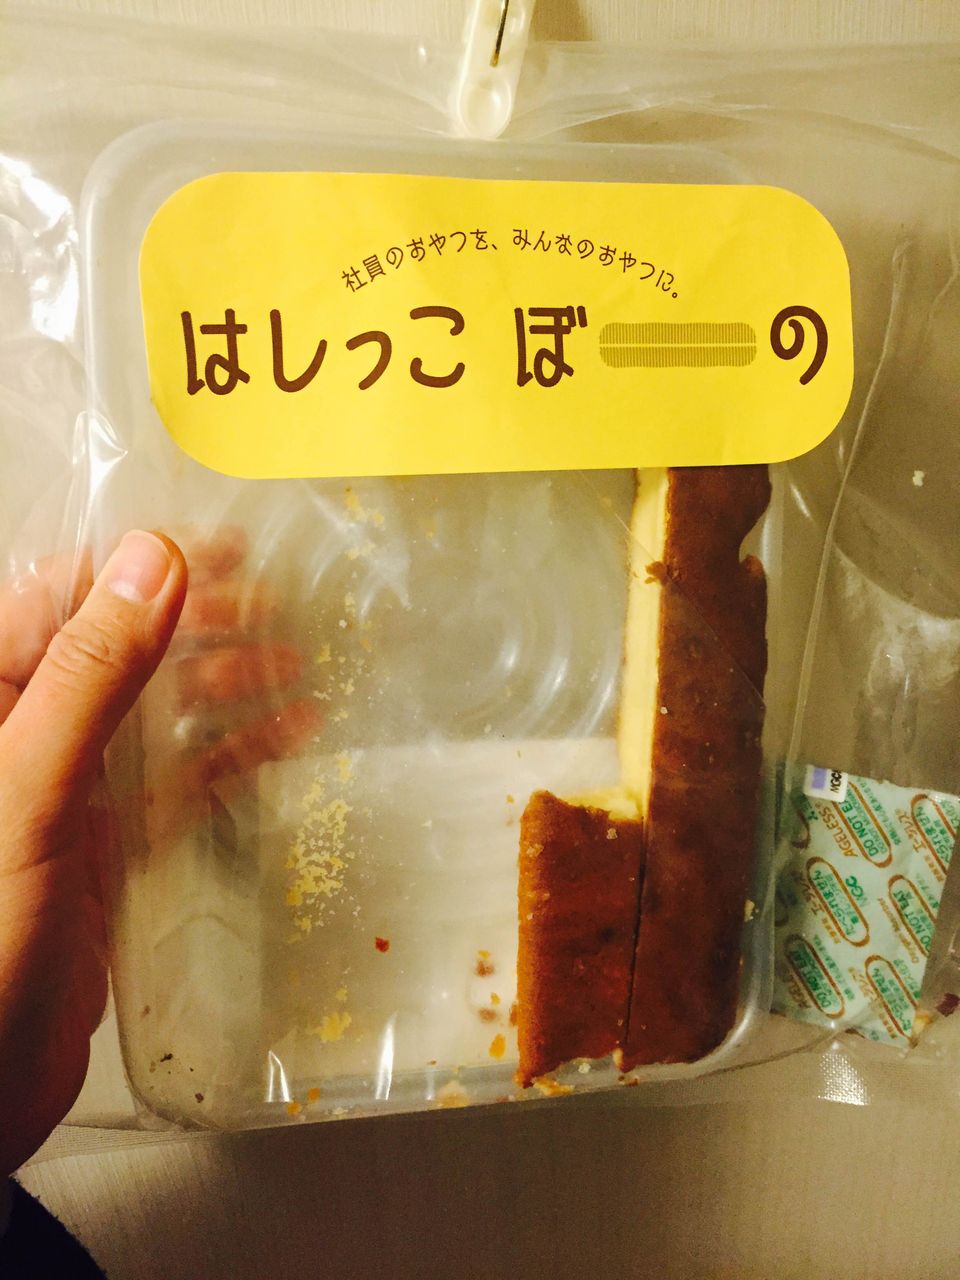 東京ぼーのの はしっこぼーの 大丸東京店限定のはしっこチーズケーキ カロリーの嵐